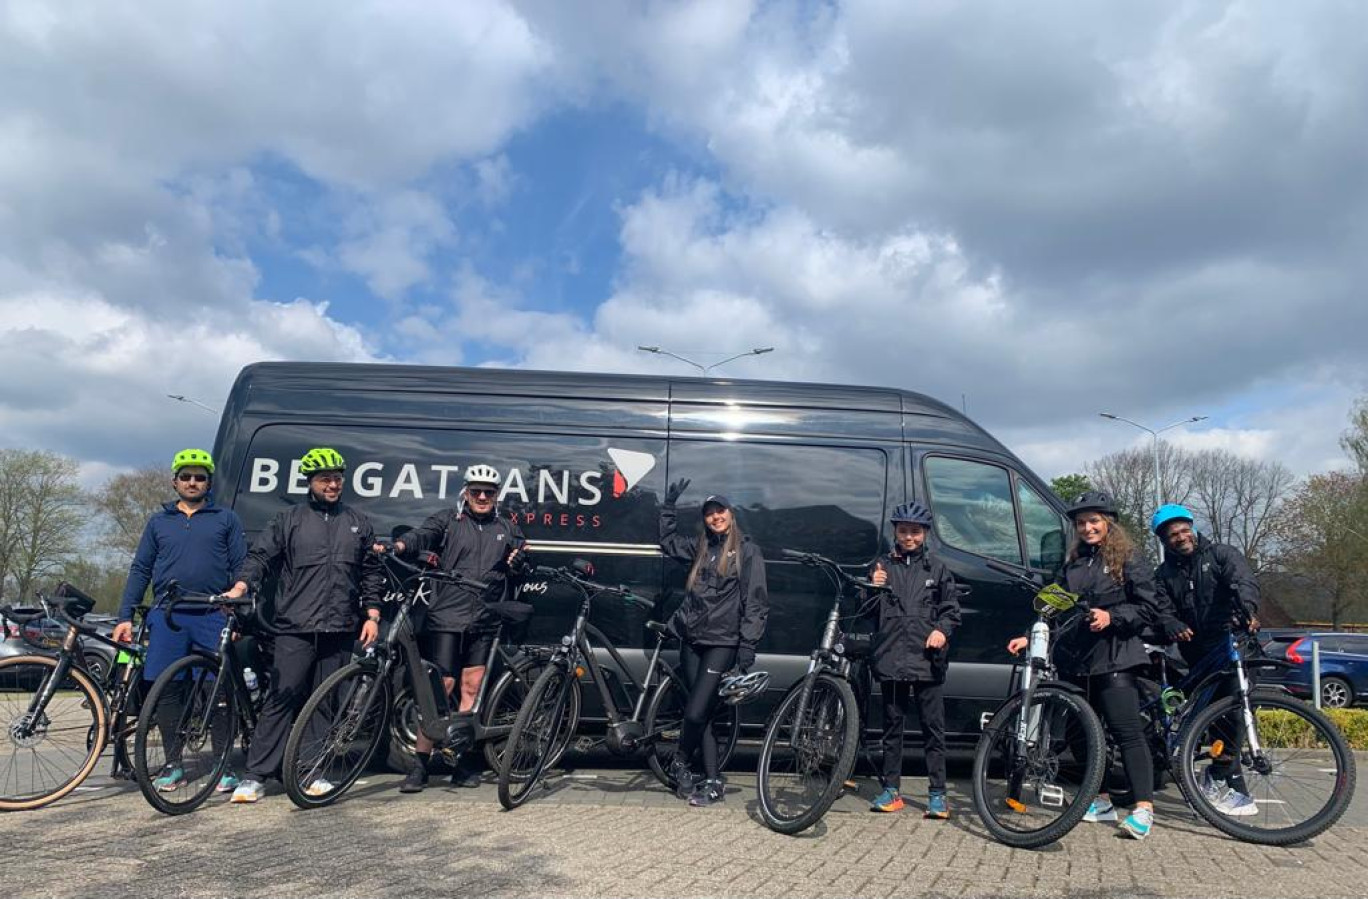 D'Amsterdam à Metz à vélo, avant de prochaines destinations. © Belgatrans Group.